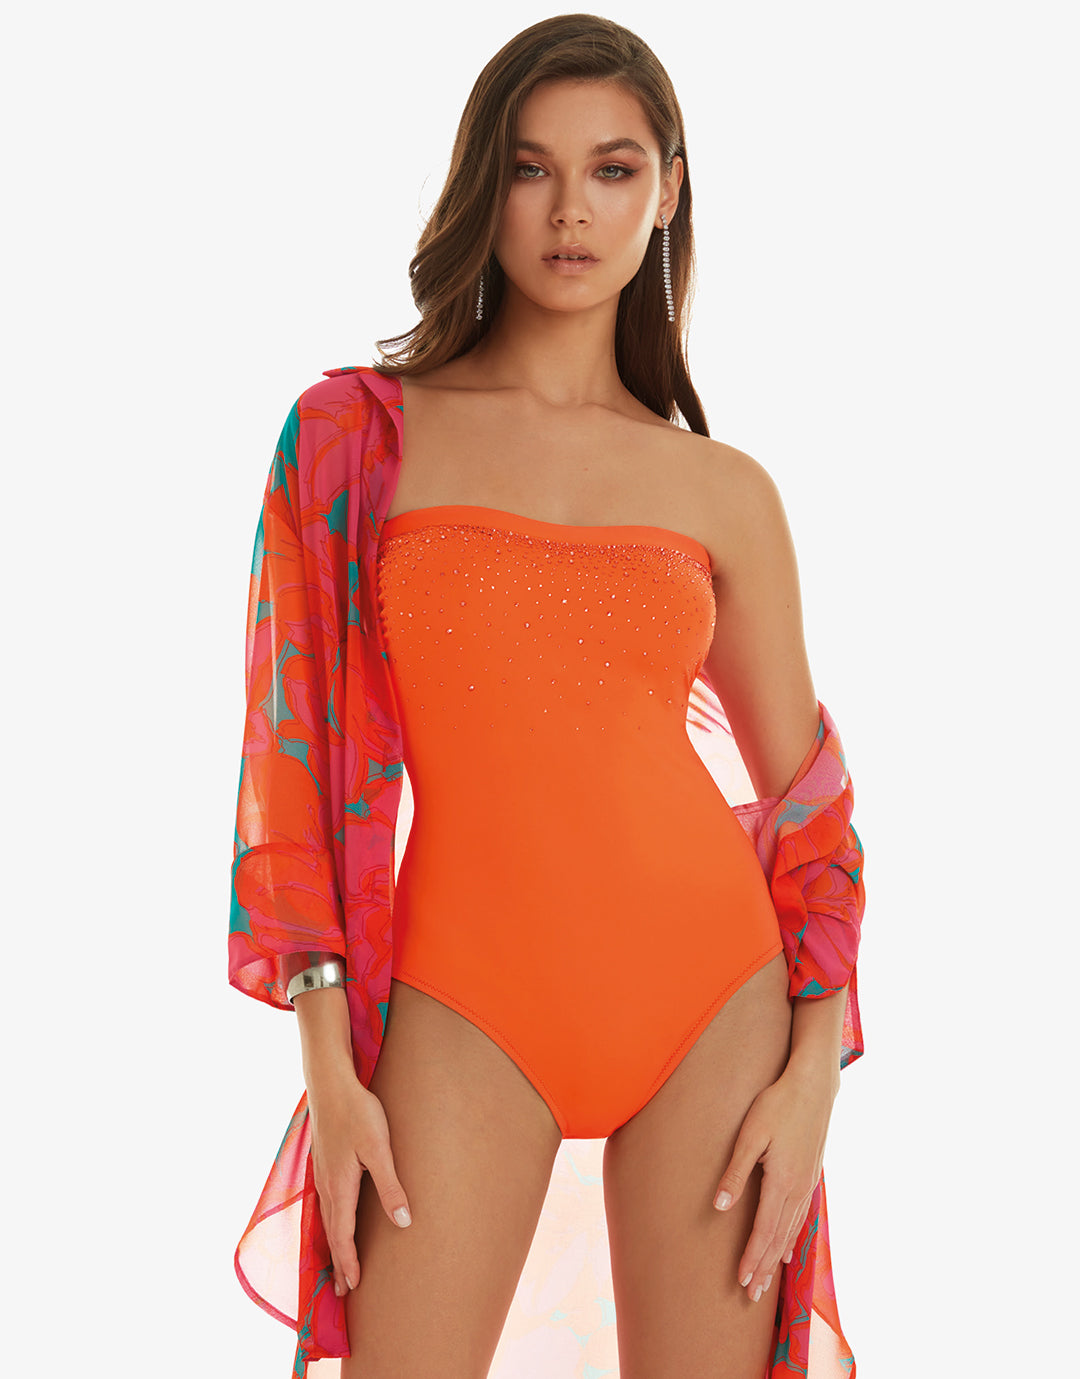 Cristal Bandeau Swimsuit - Orange - Simply Beach UK